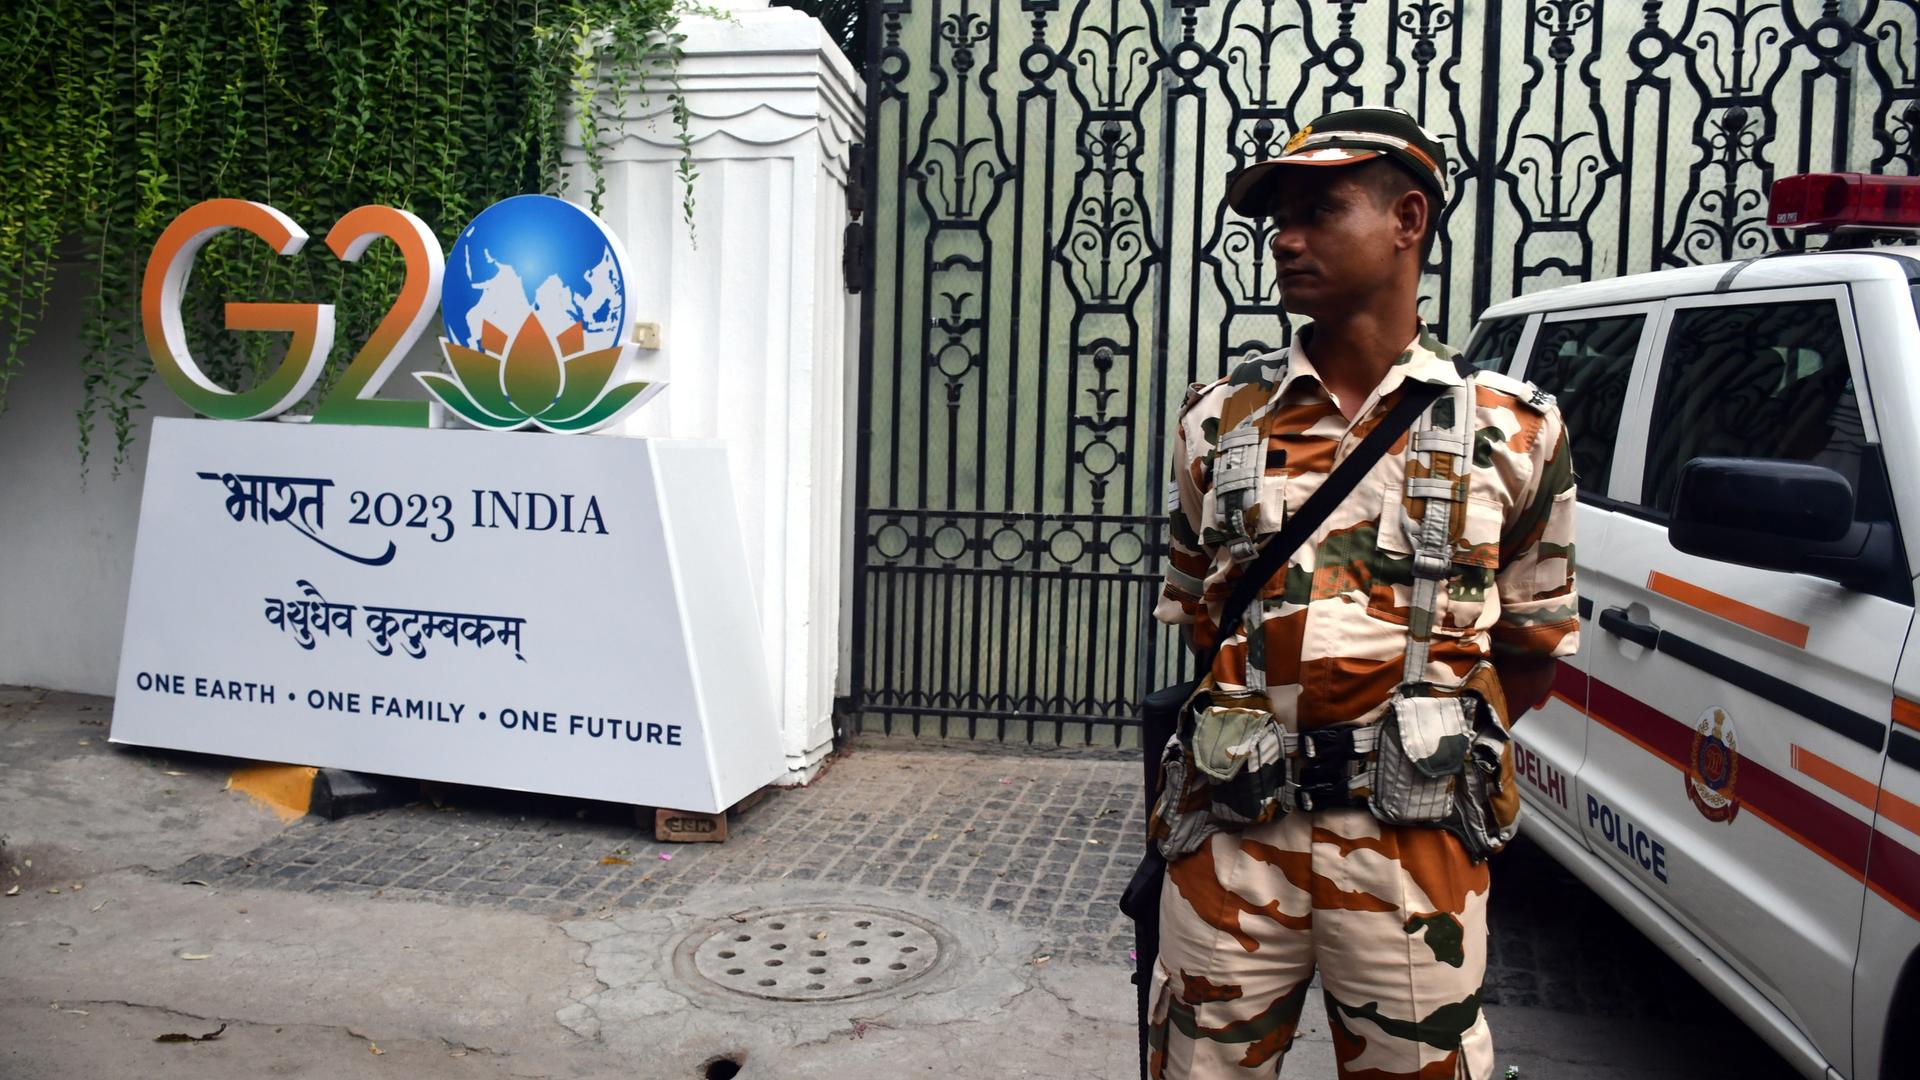 Ein Soldat steht neben dem Logo des G20-Gipfels in Indien.